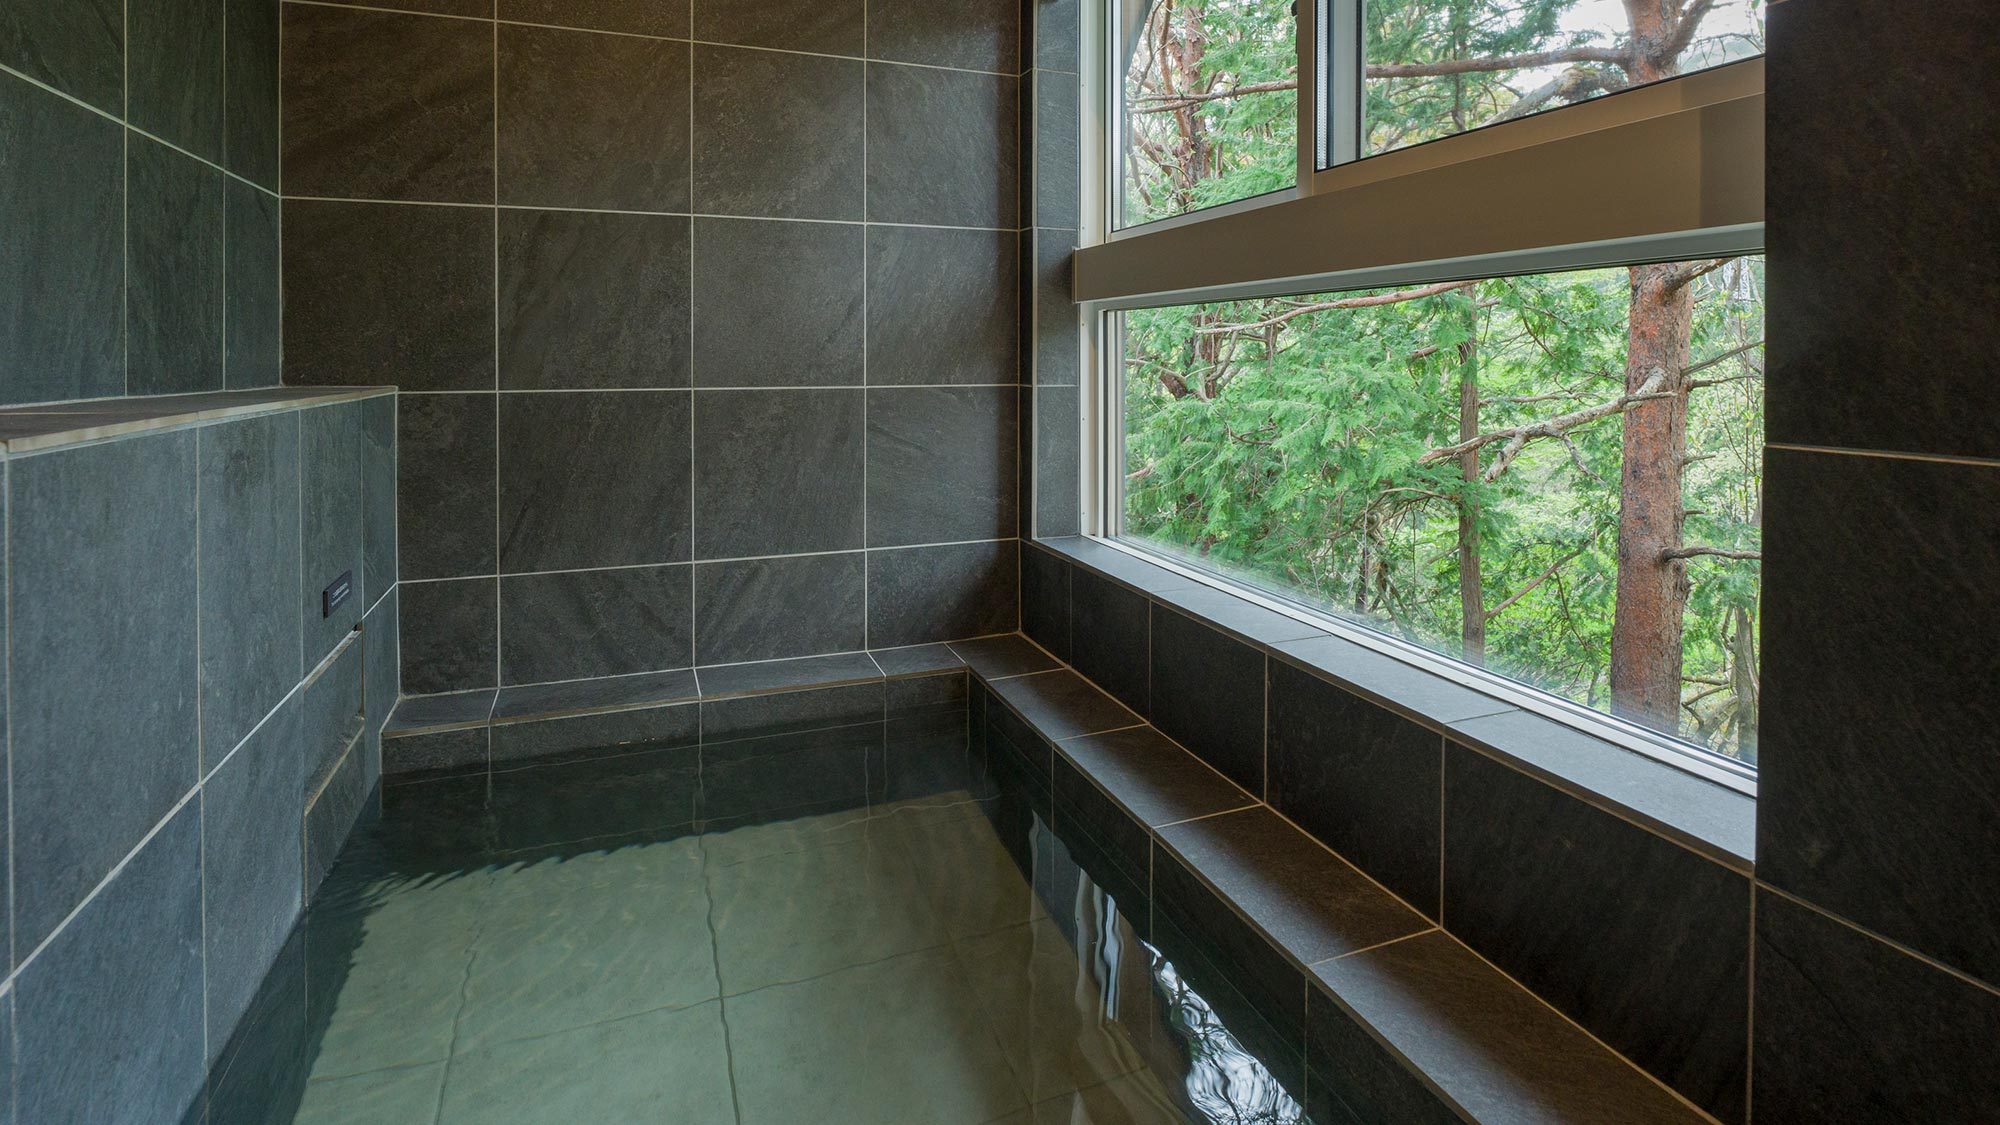 【浴室】鬼怒川の森林を感じながら、天然温泉で癒されること間違いなし